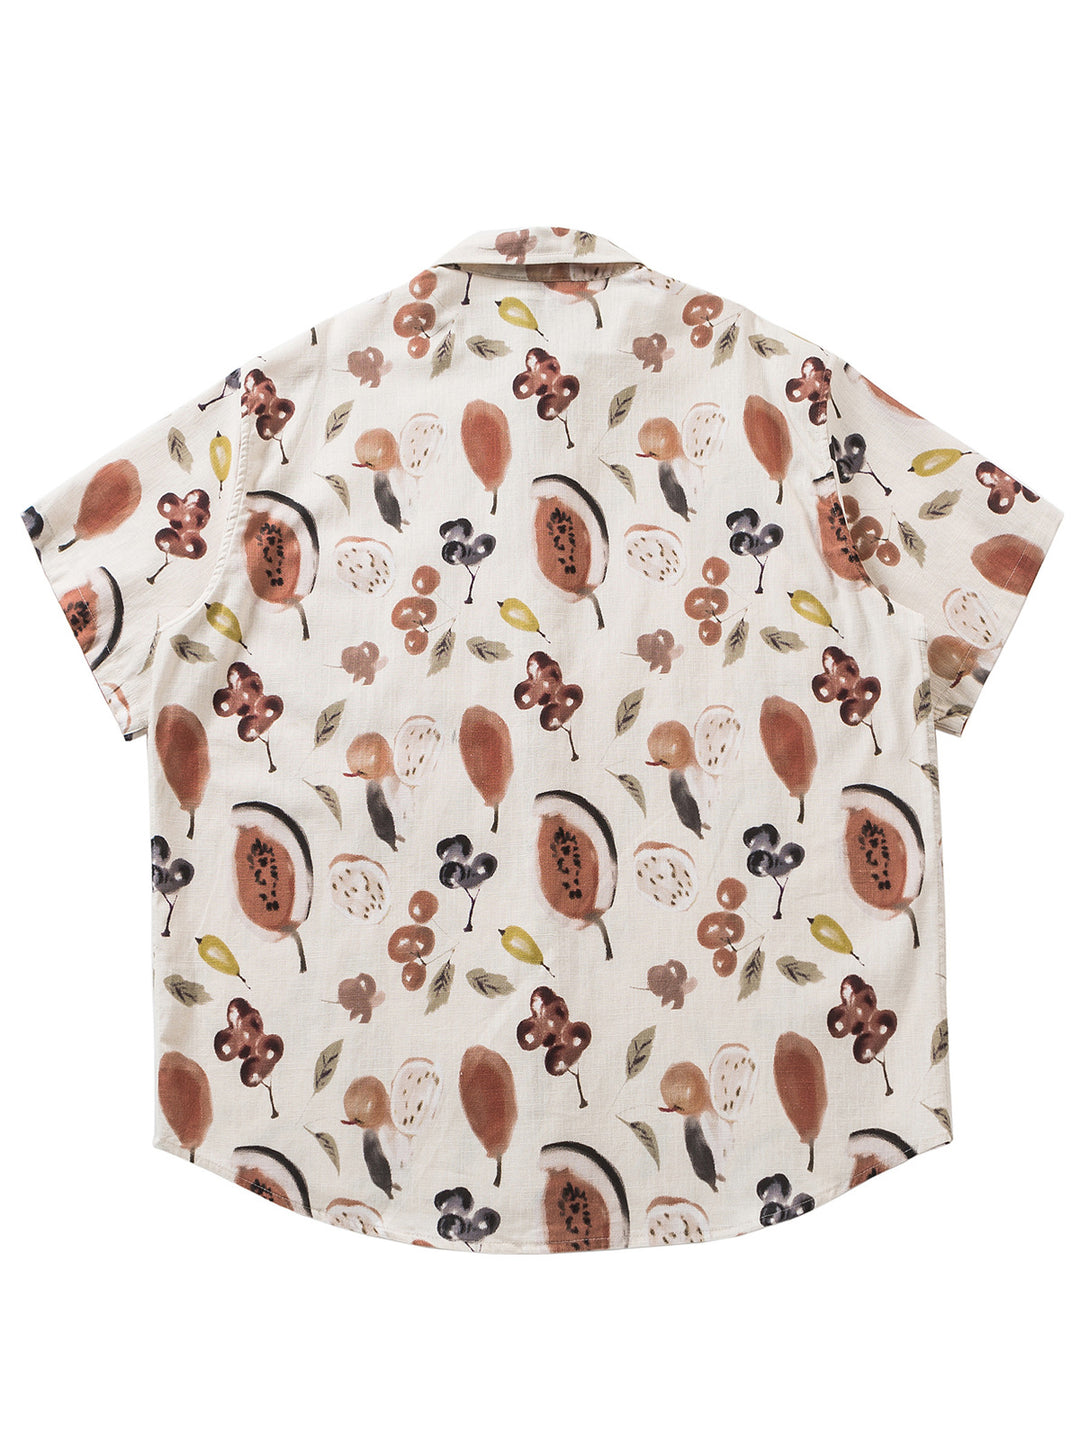 Fruity Loop - Hawaiian Short Sleeve Cotton Shirt